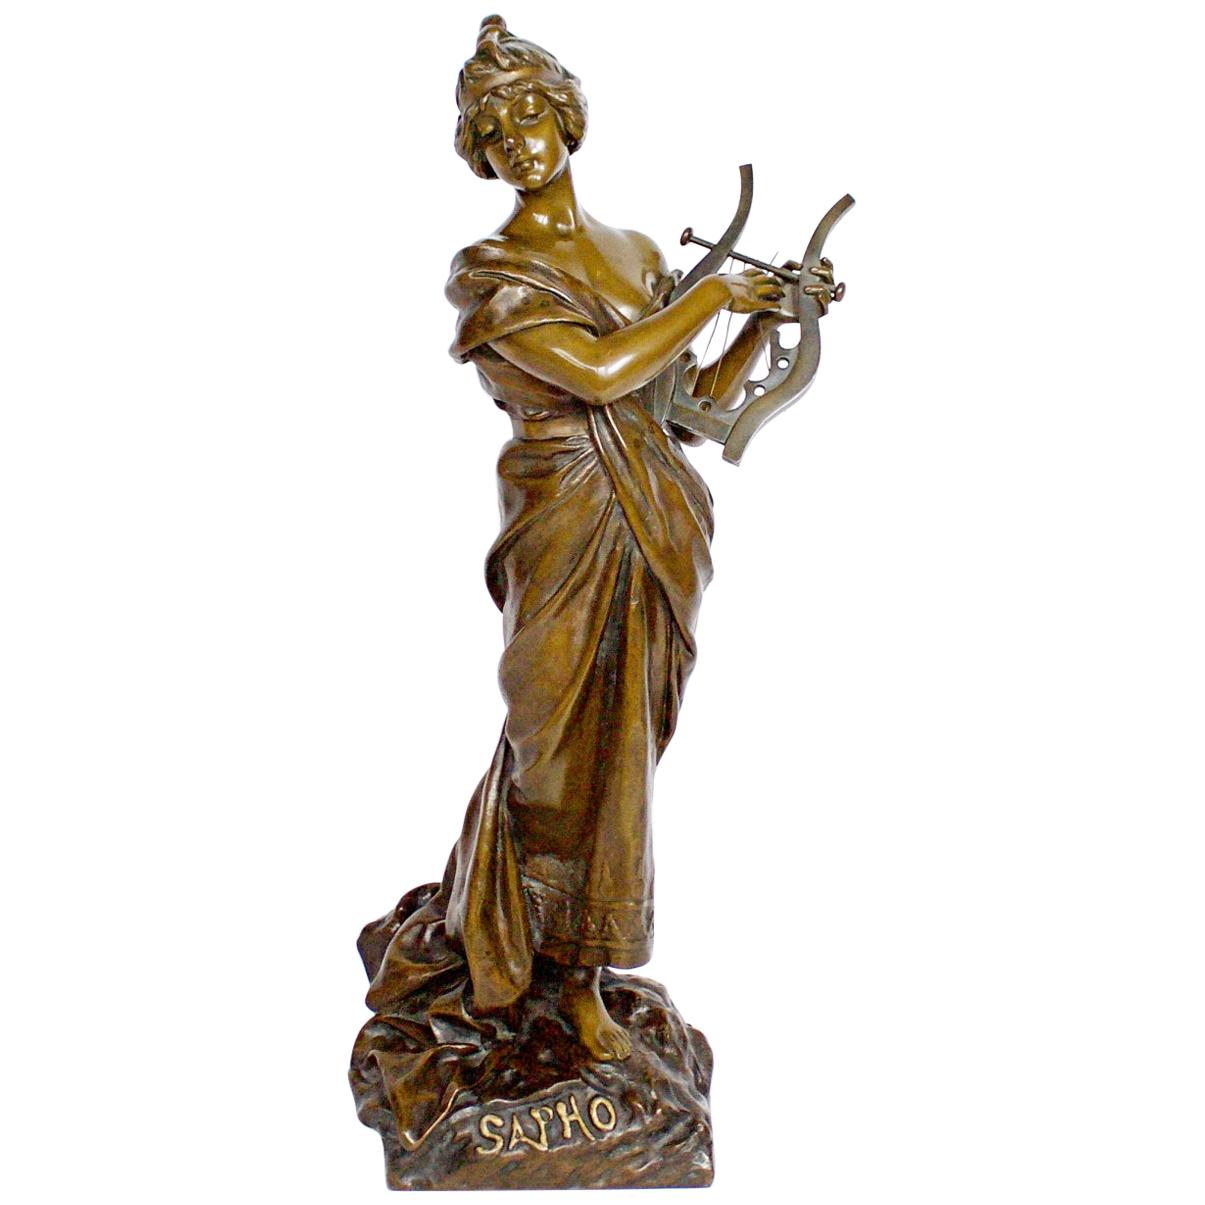 'Sapho' a Large Art Nouveau Bronze Sculpture by Emmanuel Villanis, circa 1890